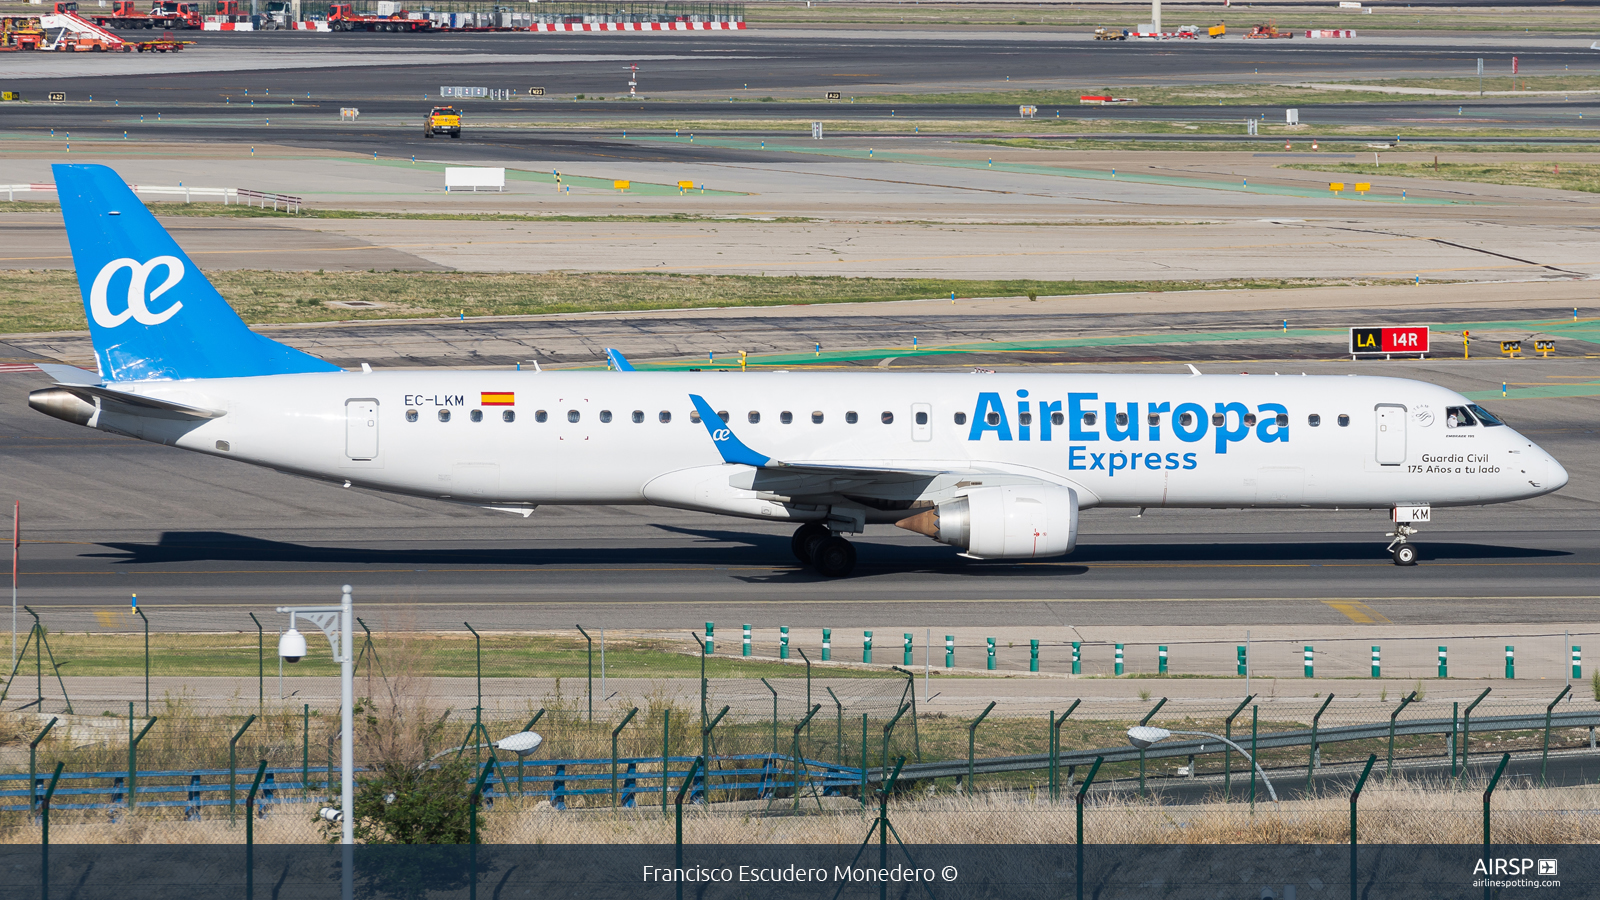 Air Europa Express  Embraer E195  EC-LKM